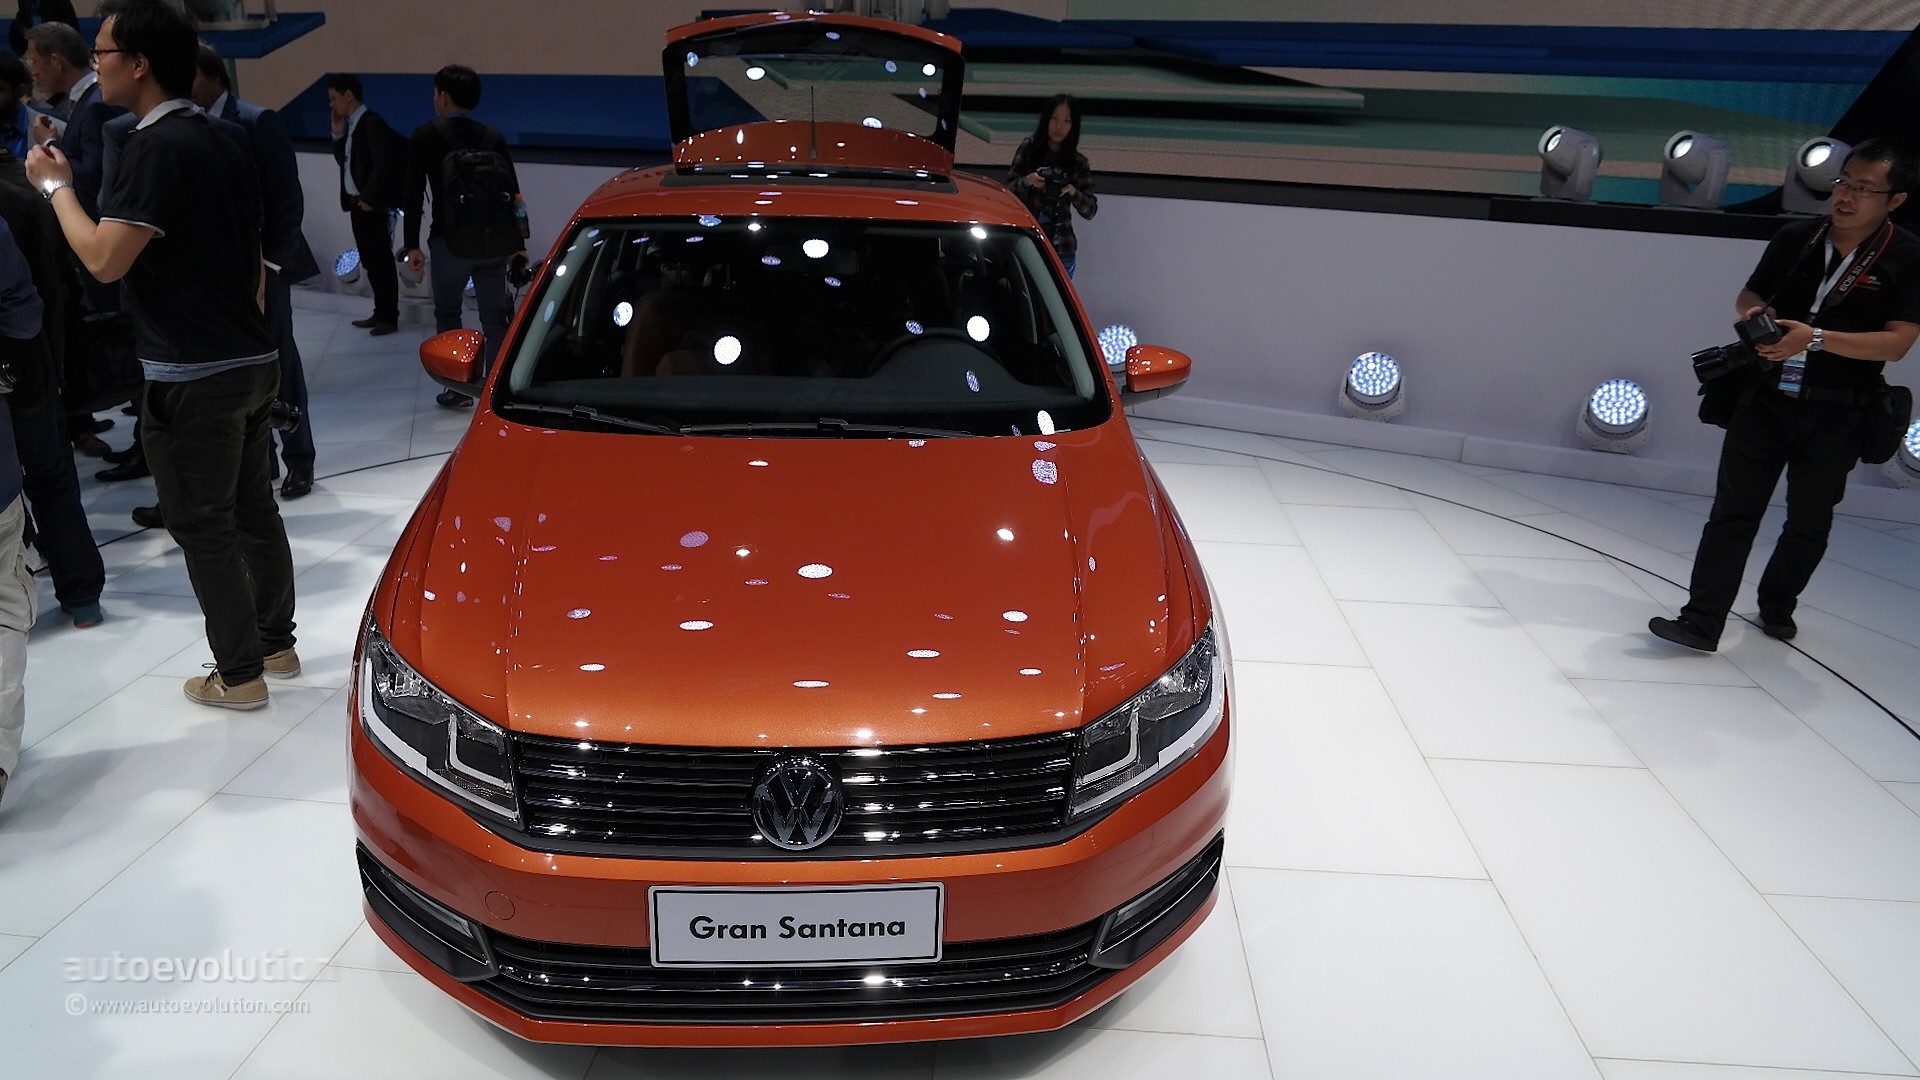 2015 Volkswagen Gran Santana Hatch Debuts in Shanghai with Skoda Rapid ...